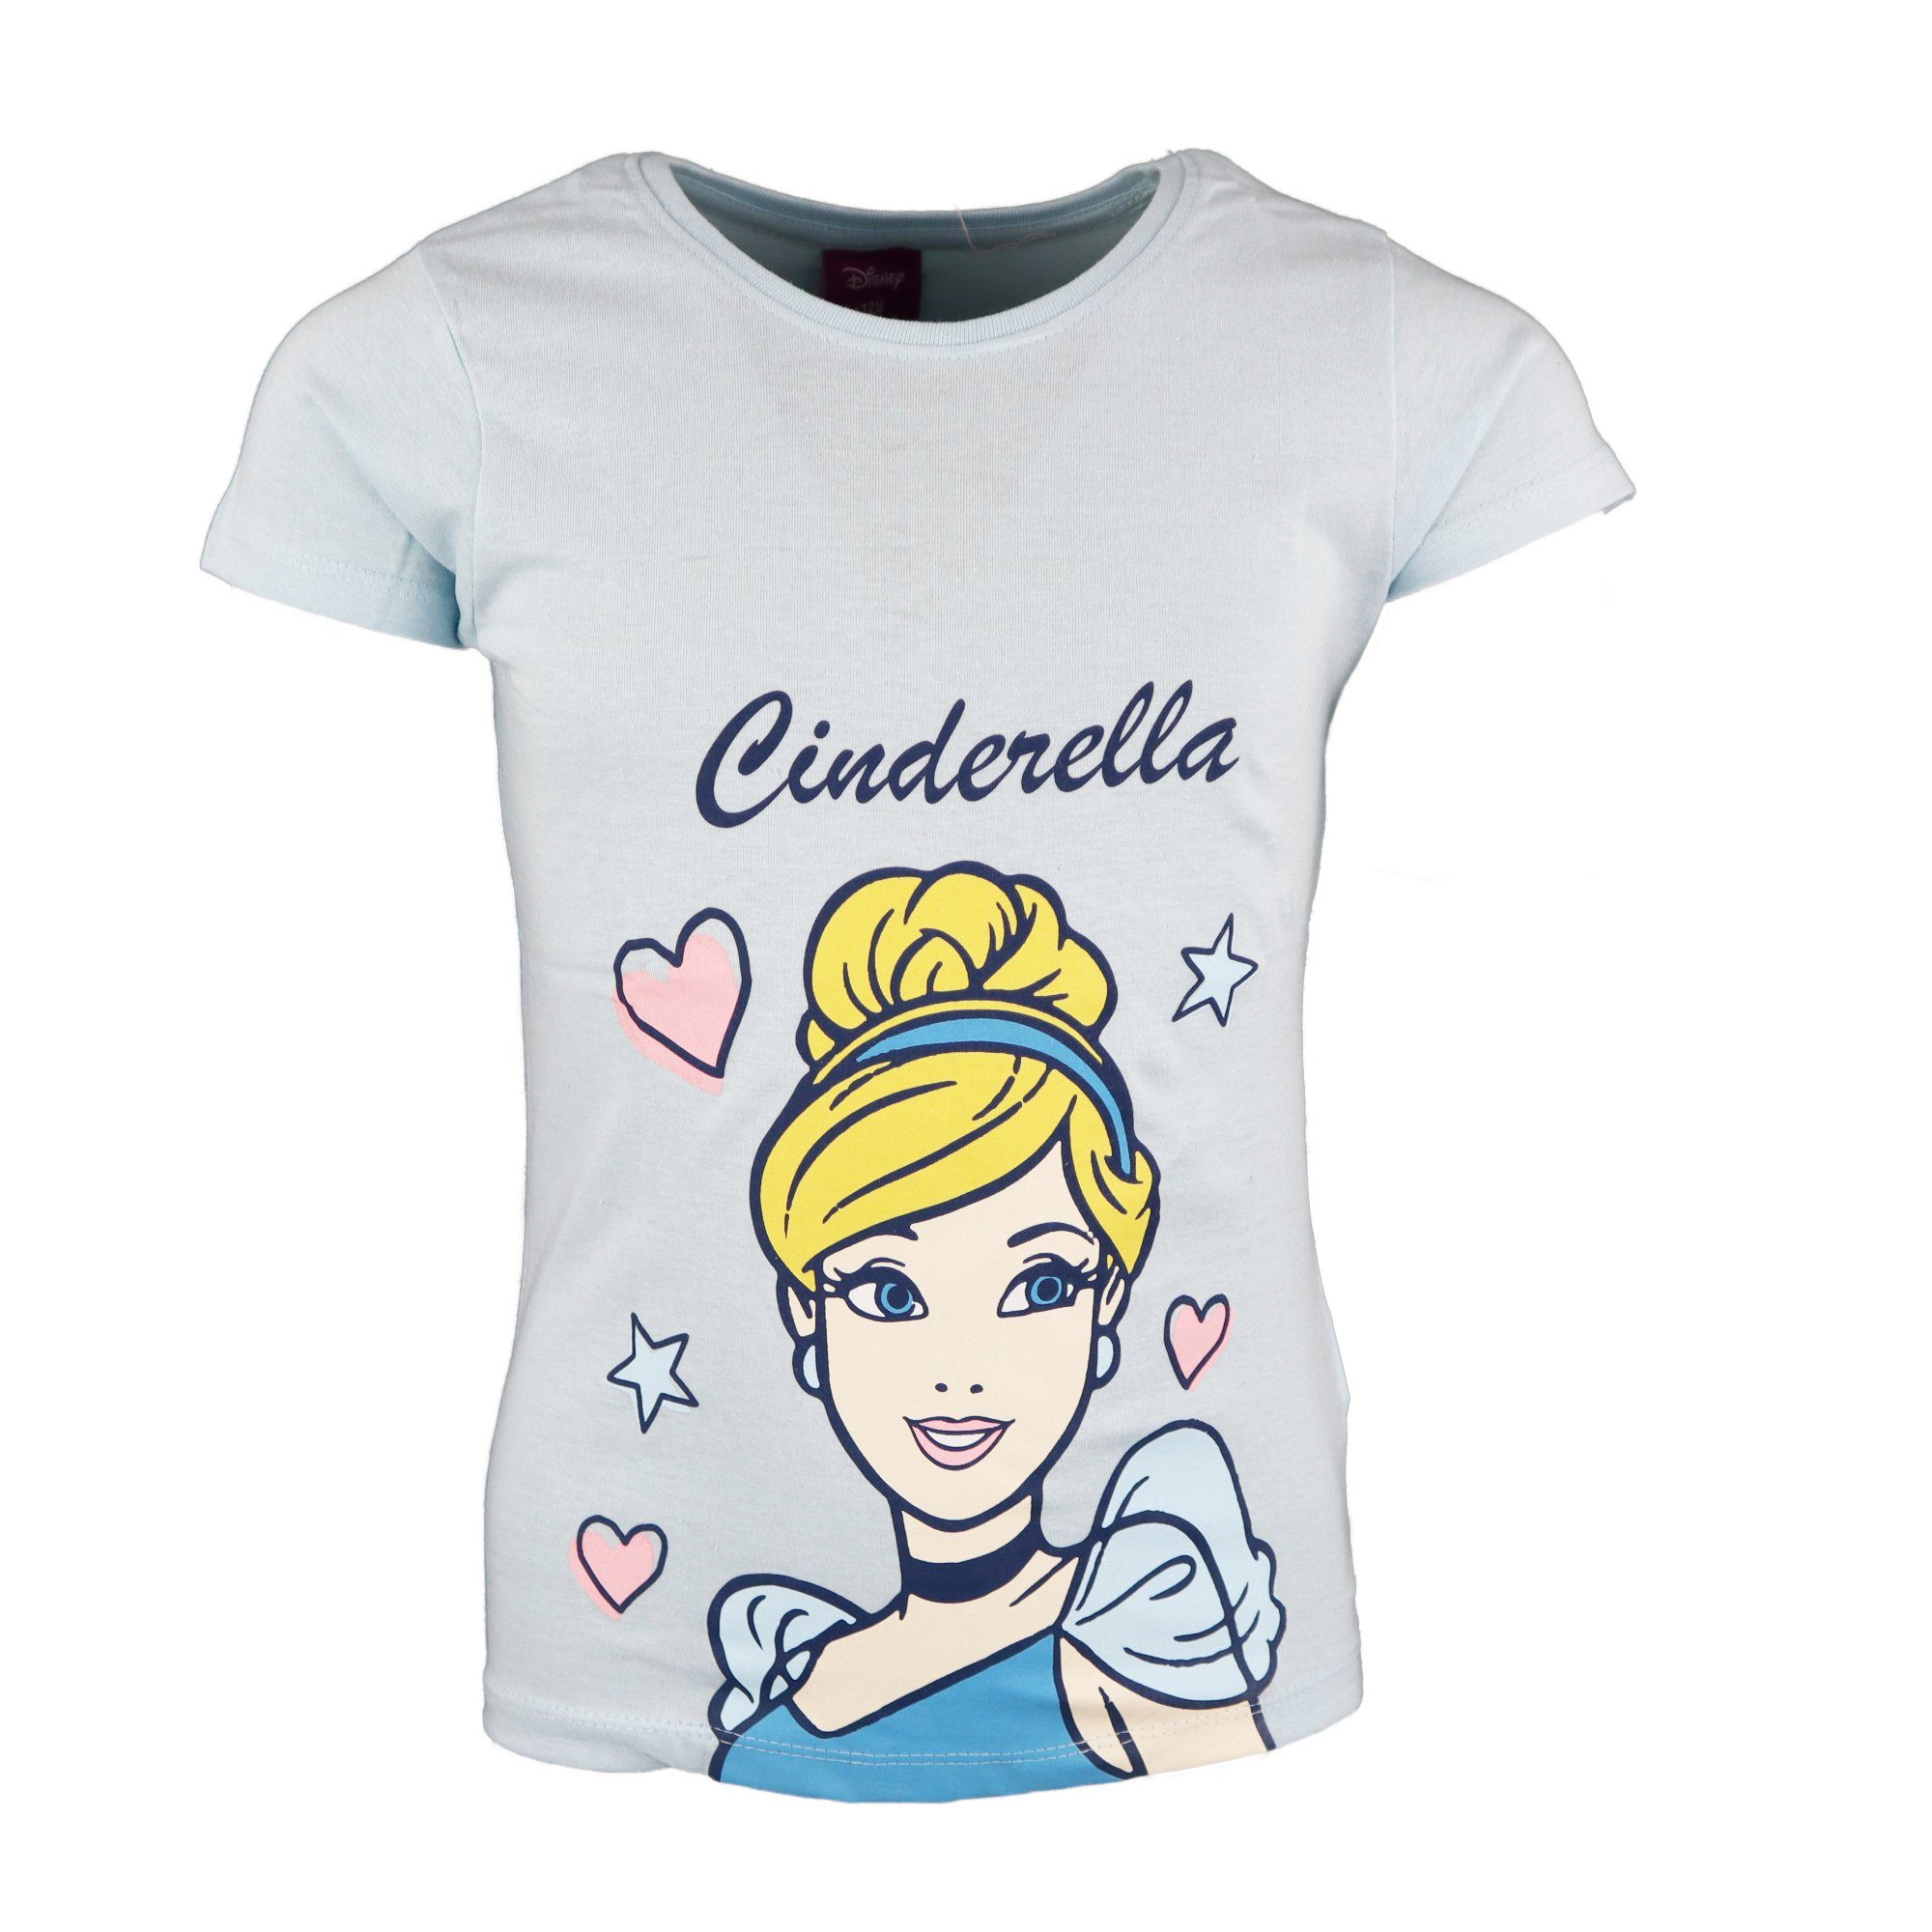 Disney Princess T-Shirt Cinderella Mädchen Kinder Shirt Gr. 98 bis 128, Baumwolle Hellblau